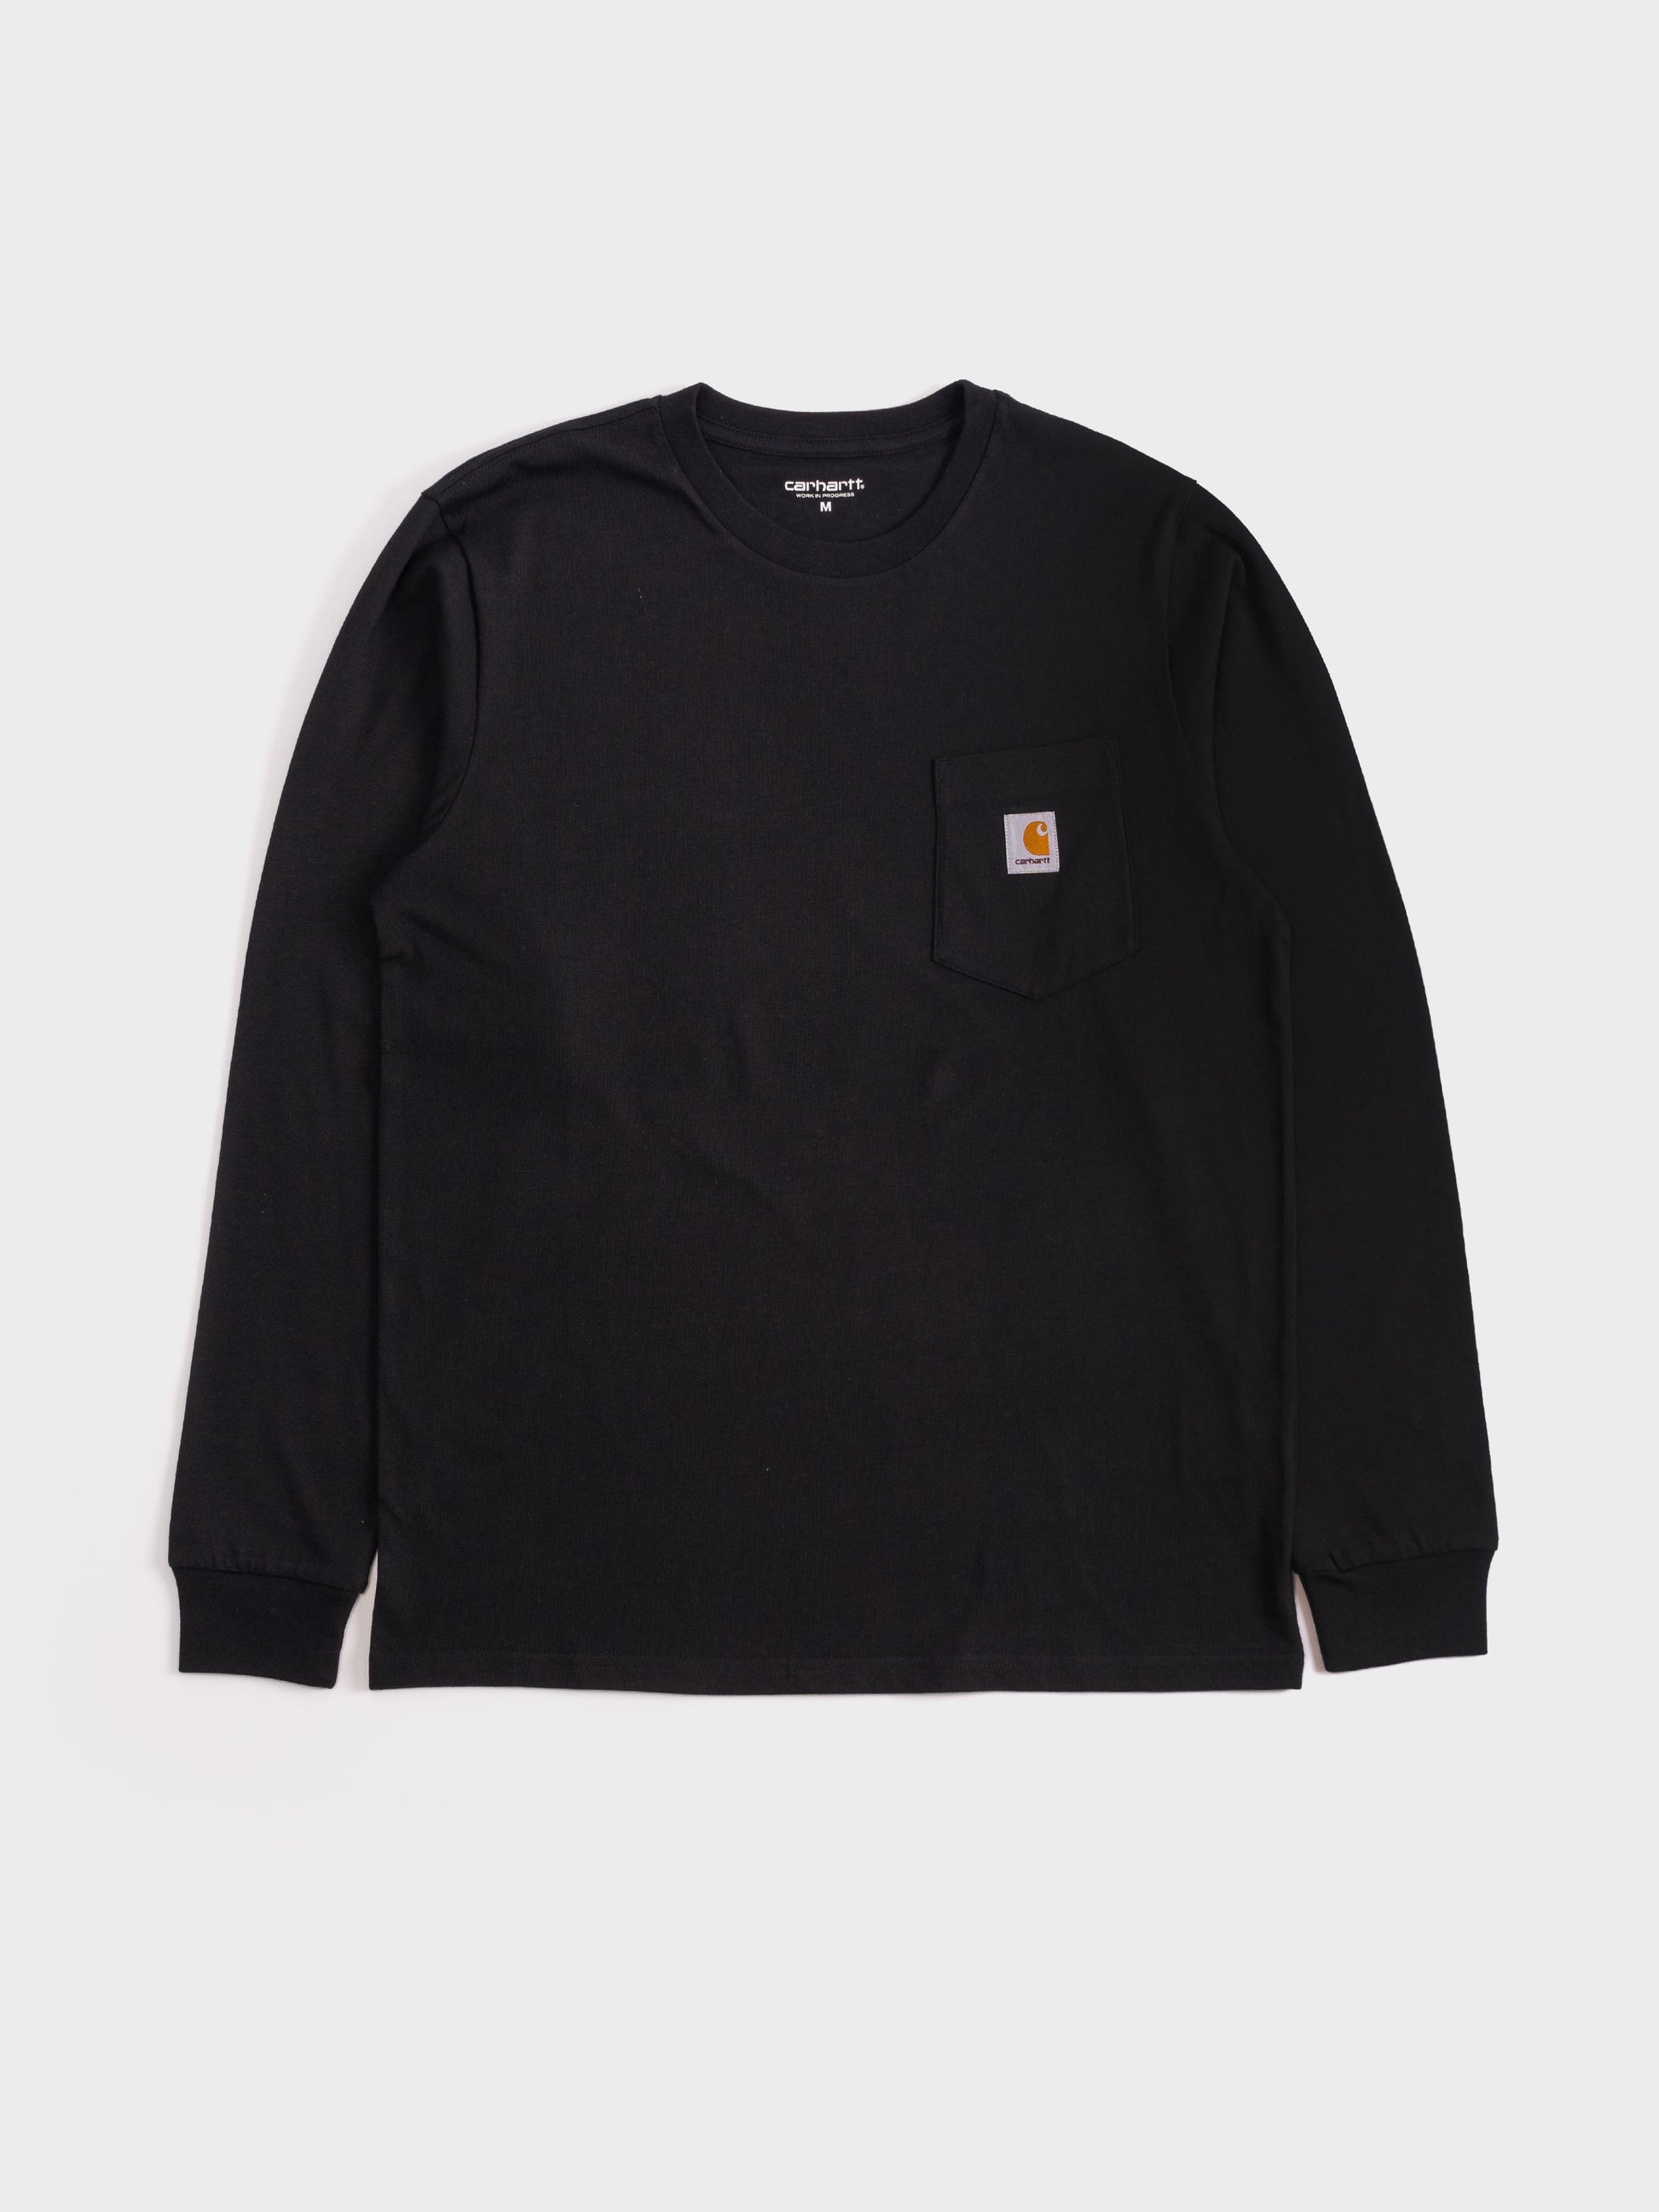 Carhartt L/S Pocket T Shirt - Black